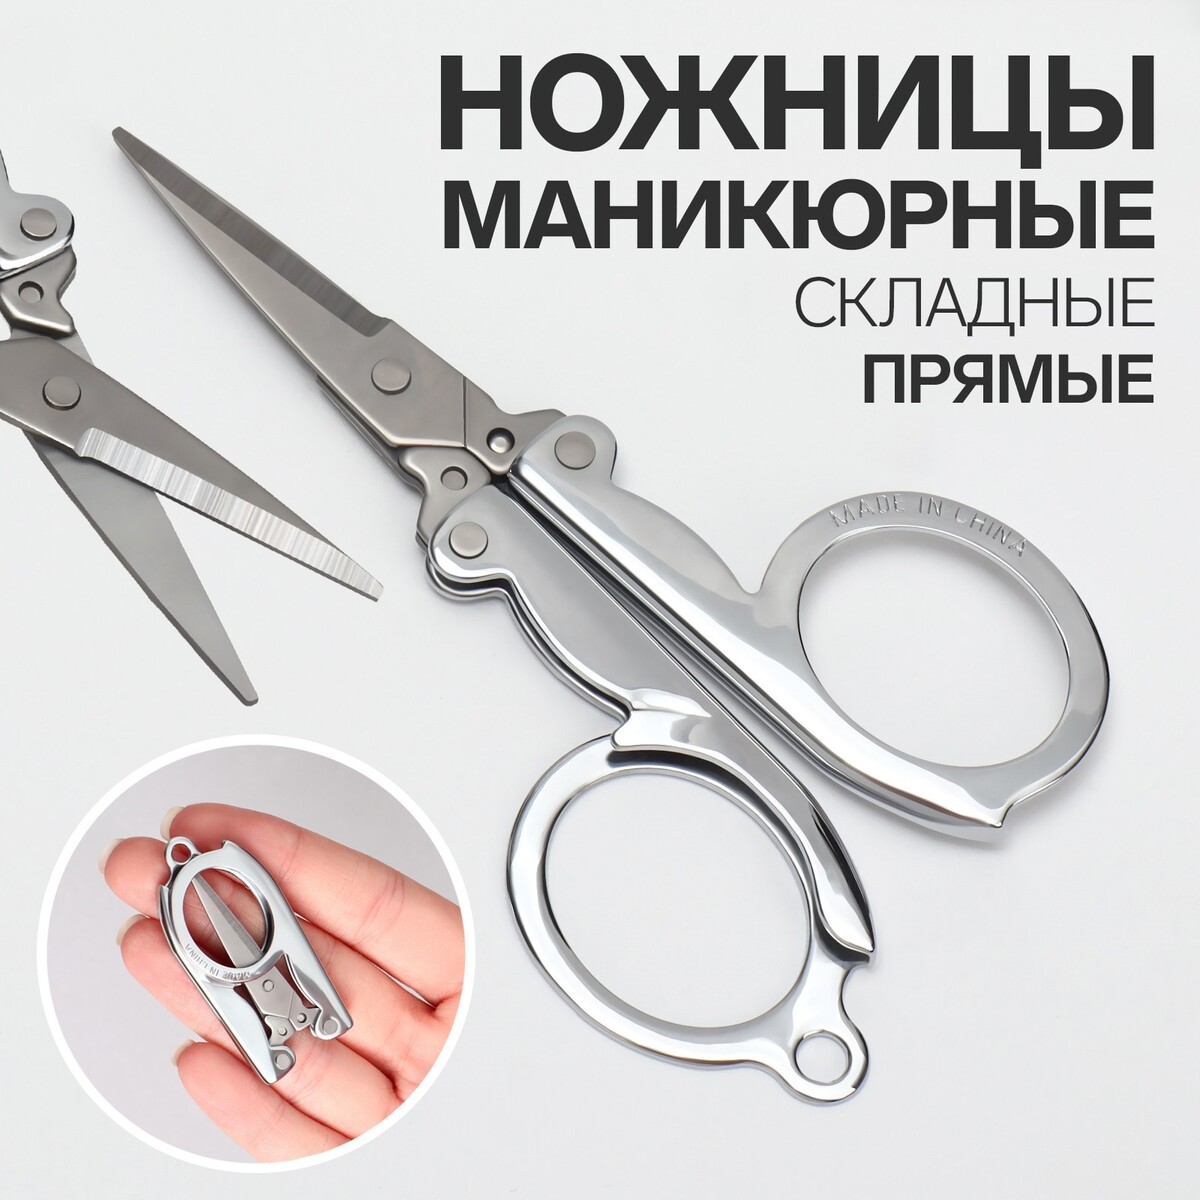 Ножницы маникюрные, прямые, складные, 9 см, цвет серебристый ножницы безопасные прямые 9 см серебристый